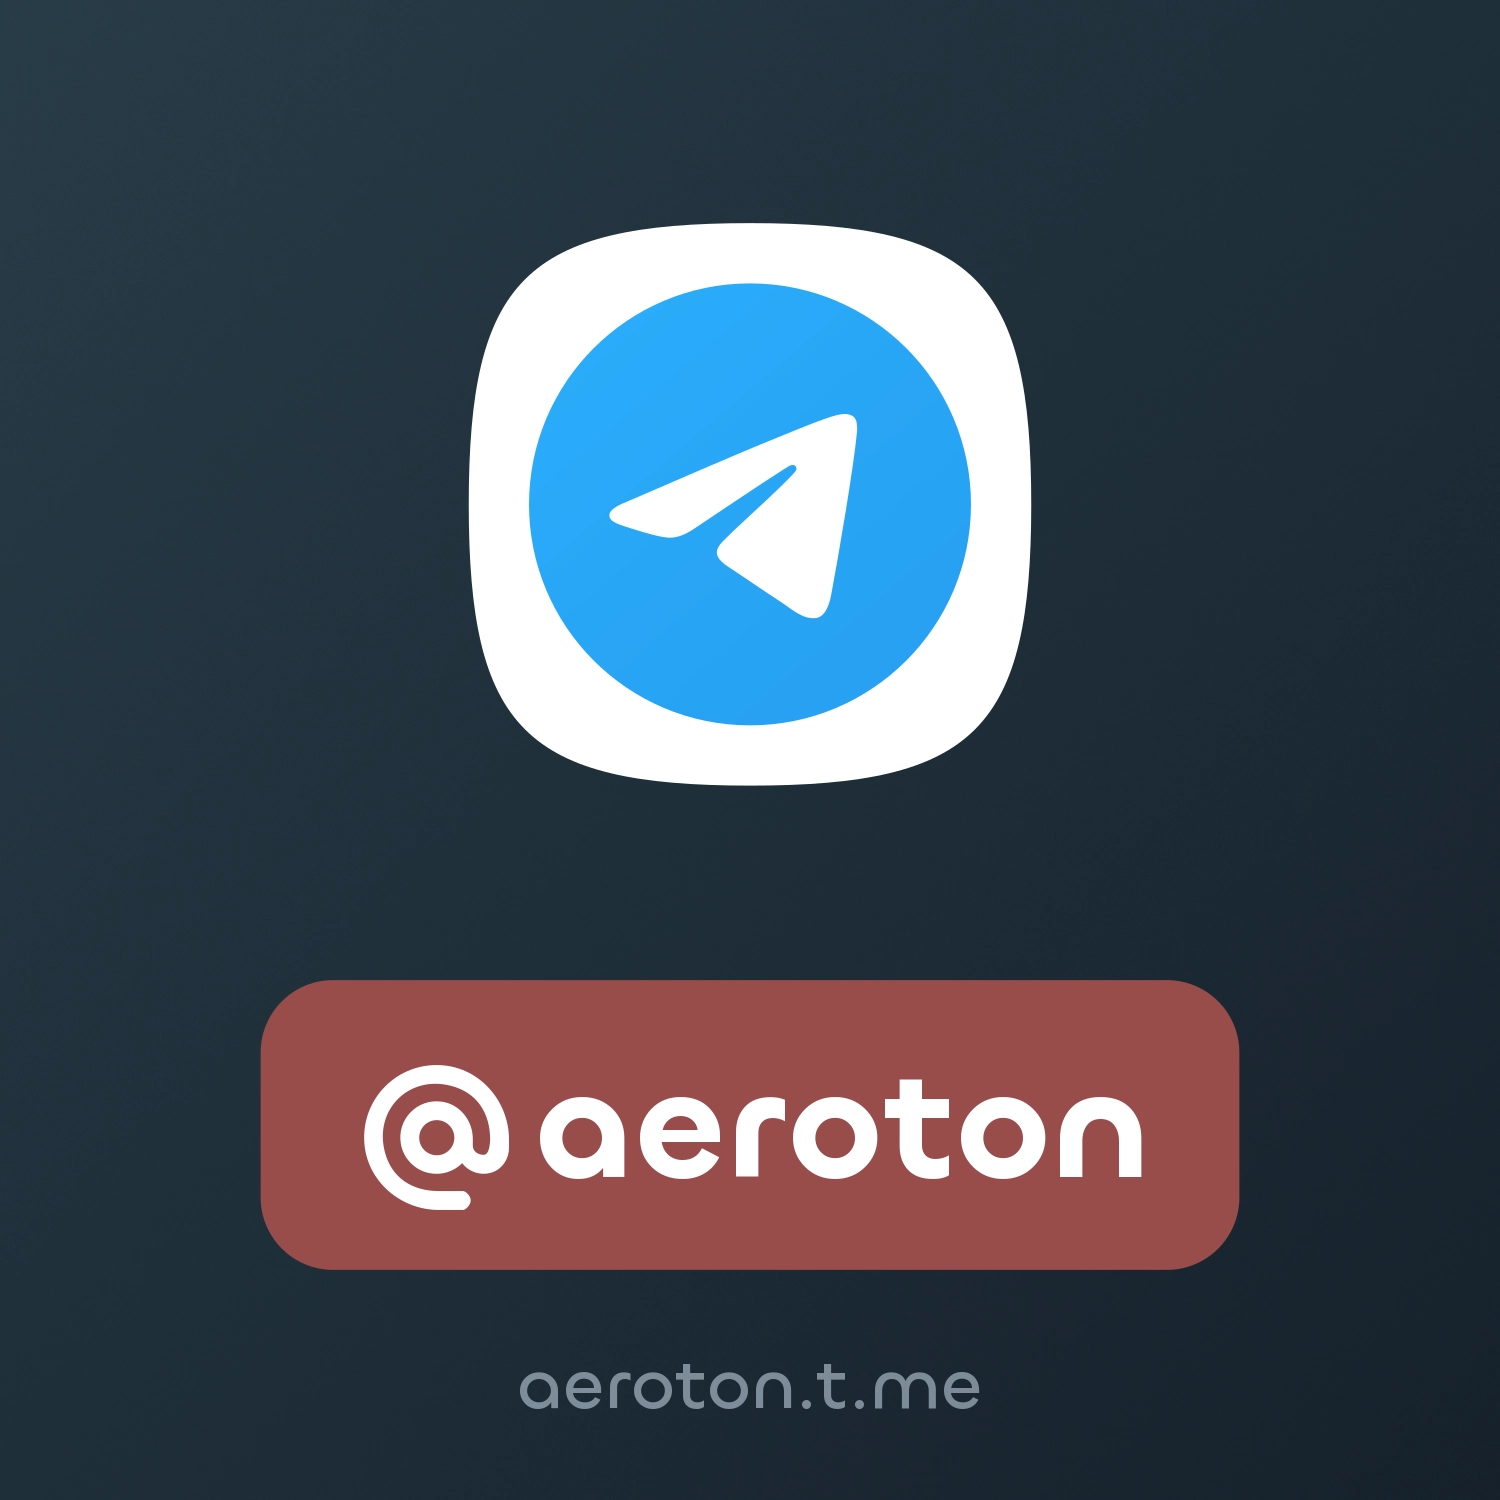 @aeroton